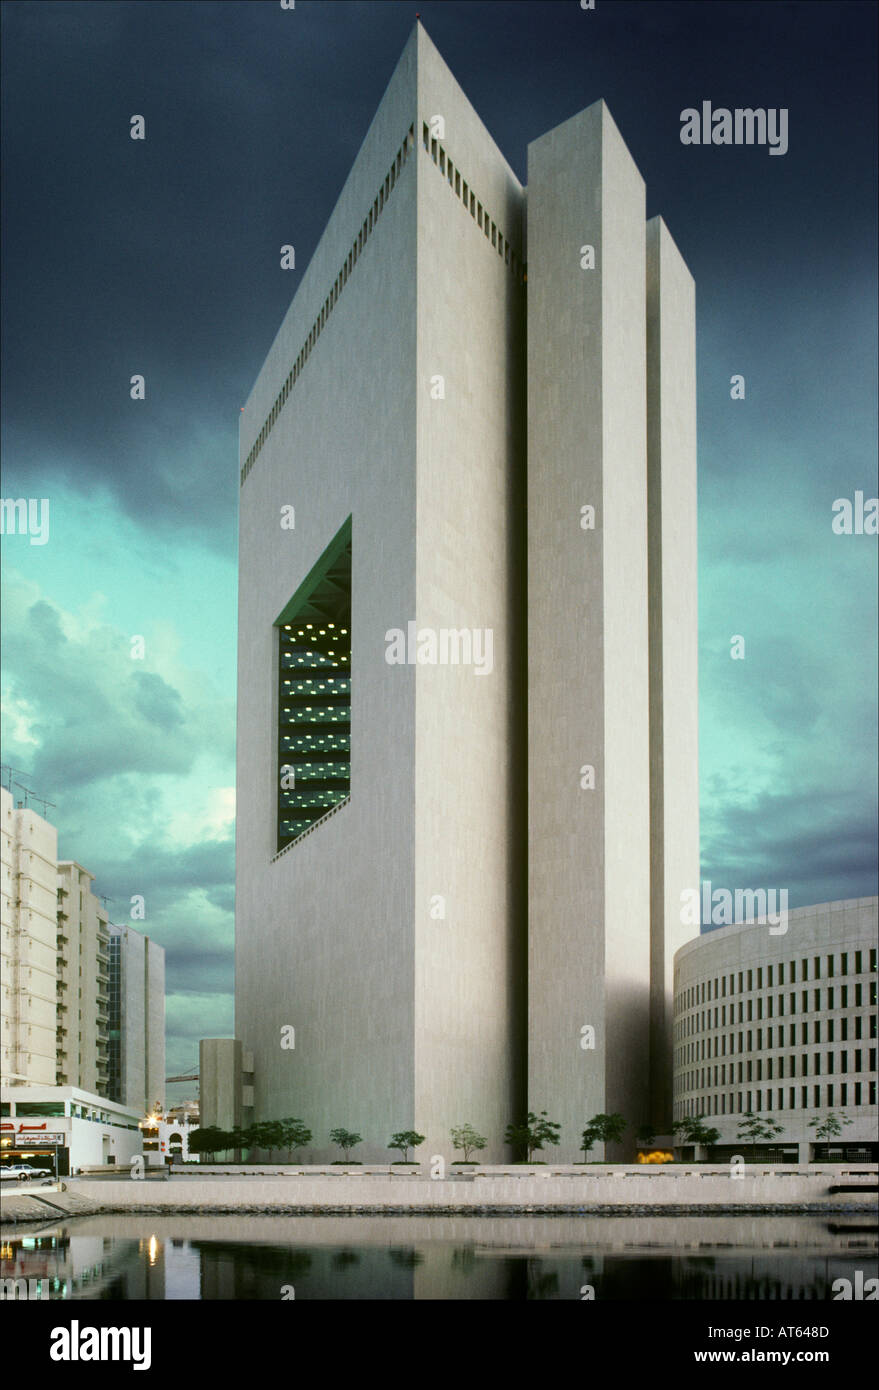 Saudi national bank